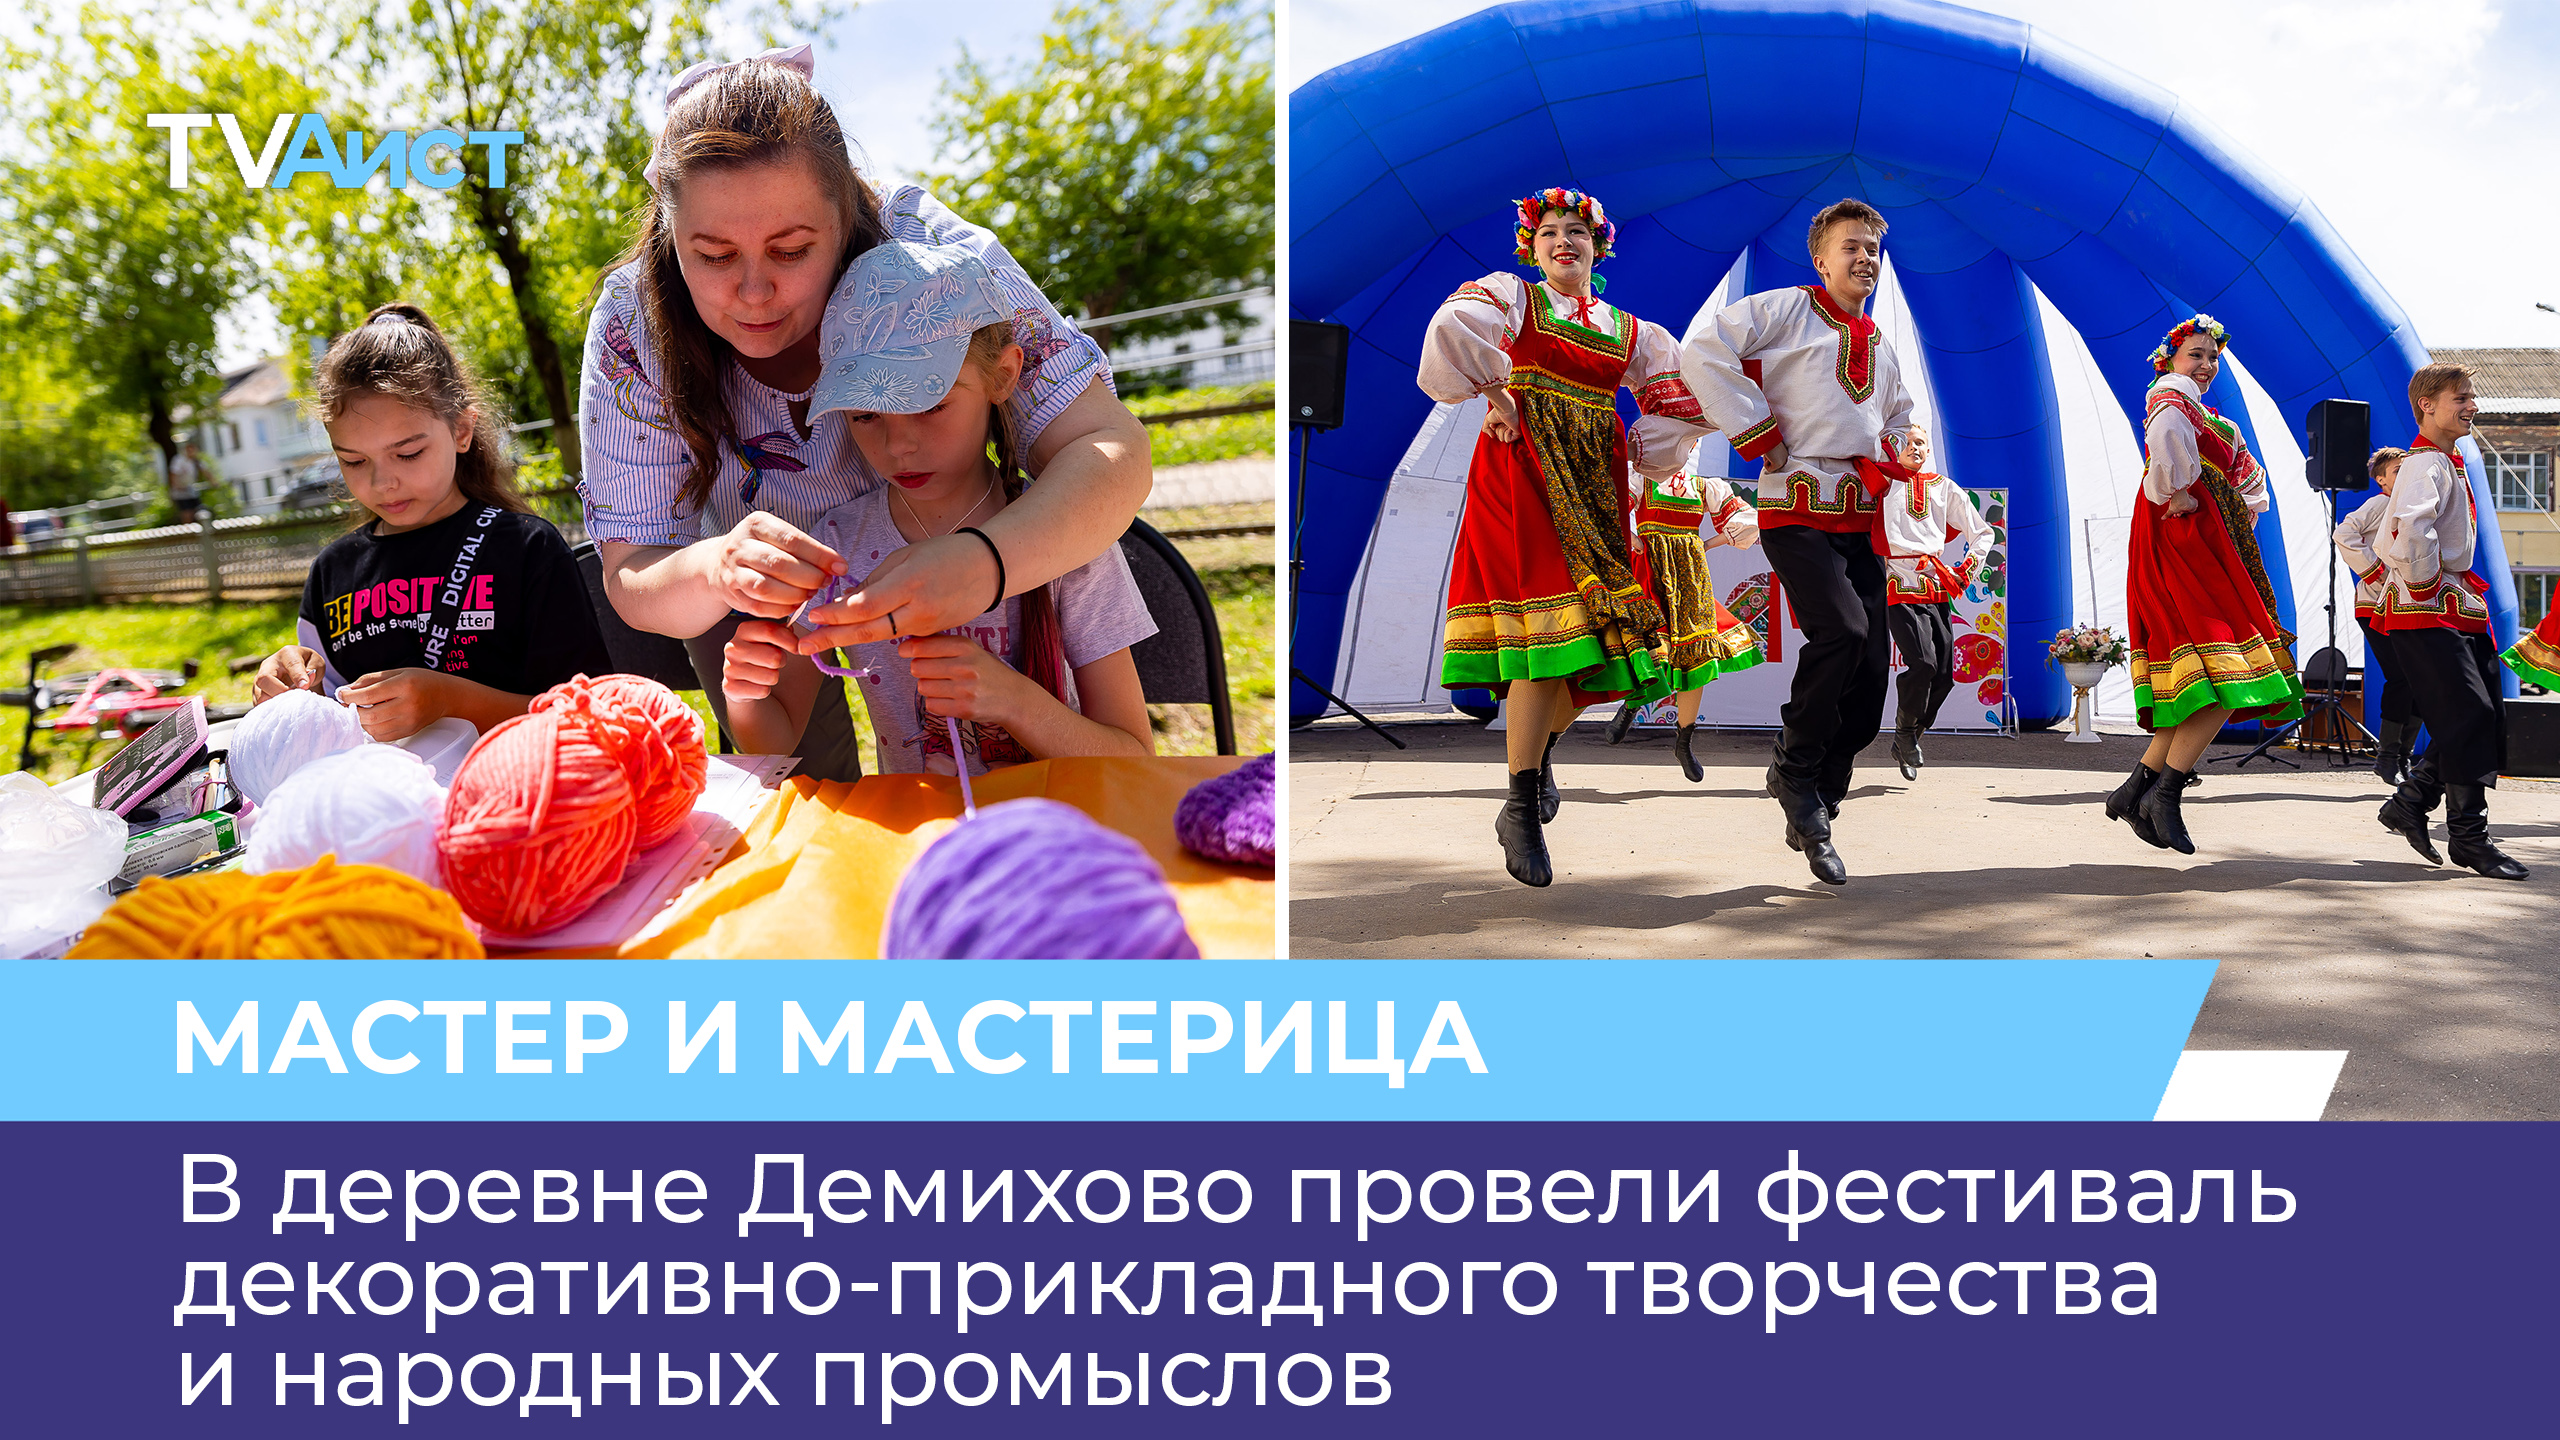 В деревне Демихово провели фестиваль декоративно-прикладного творчества и народных промыслов